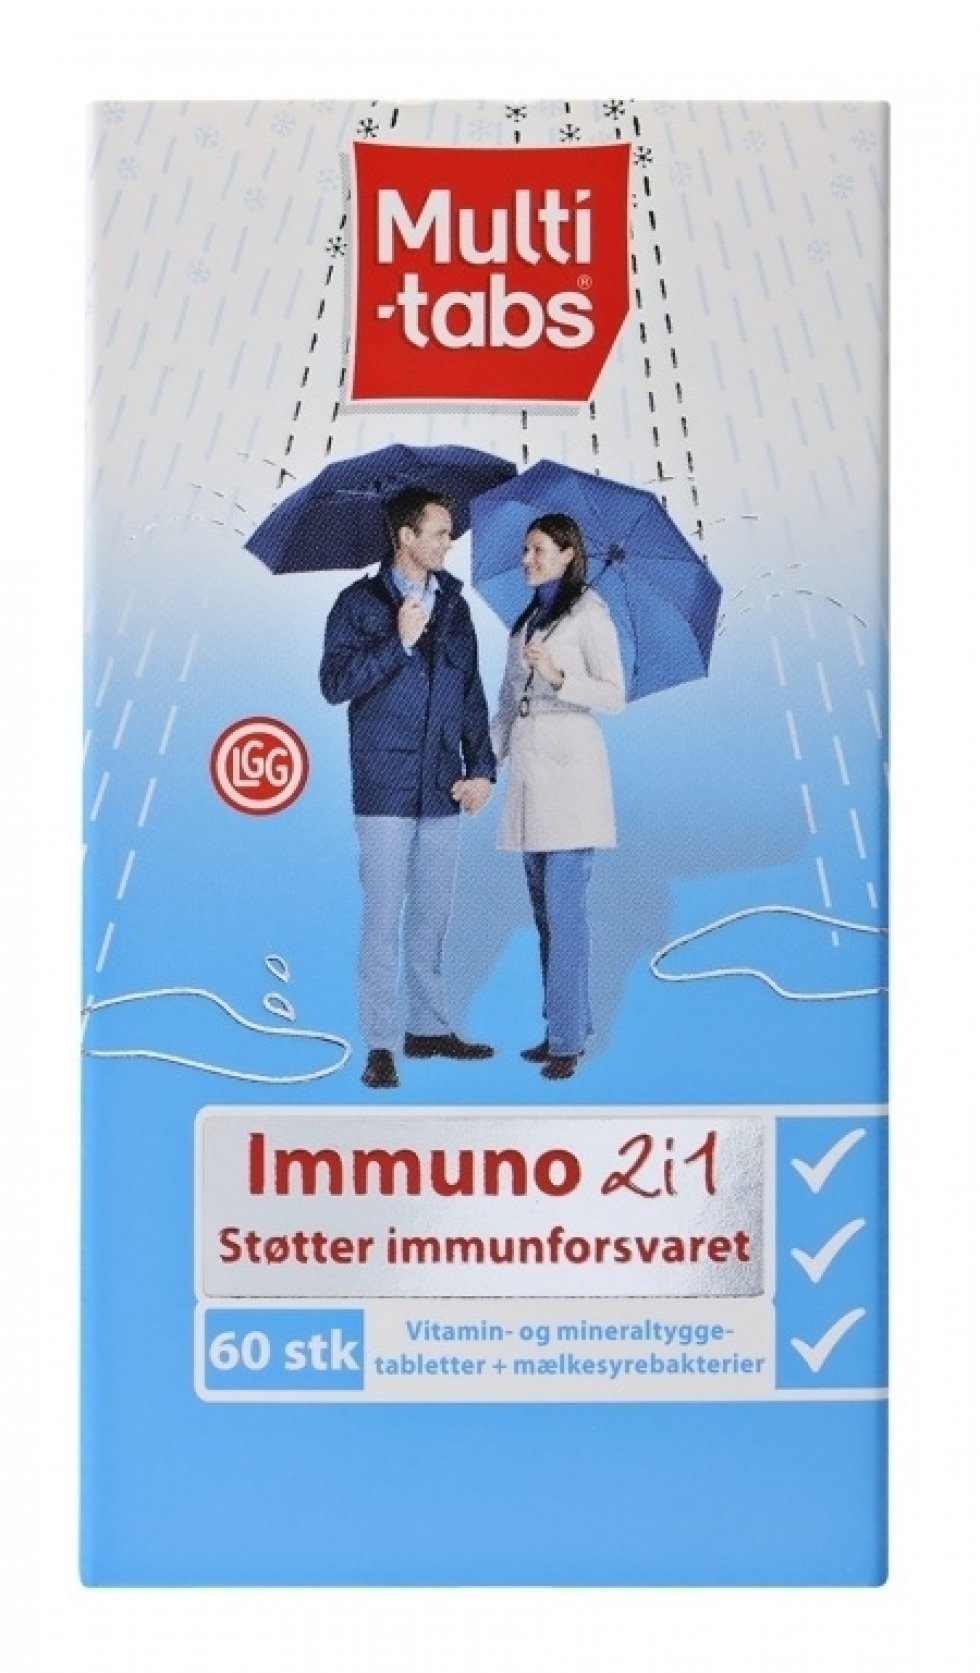 Styrk immunforsvaret